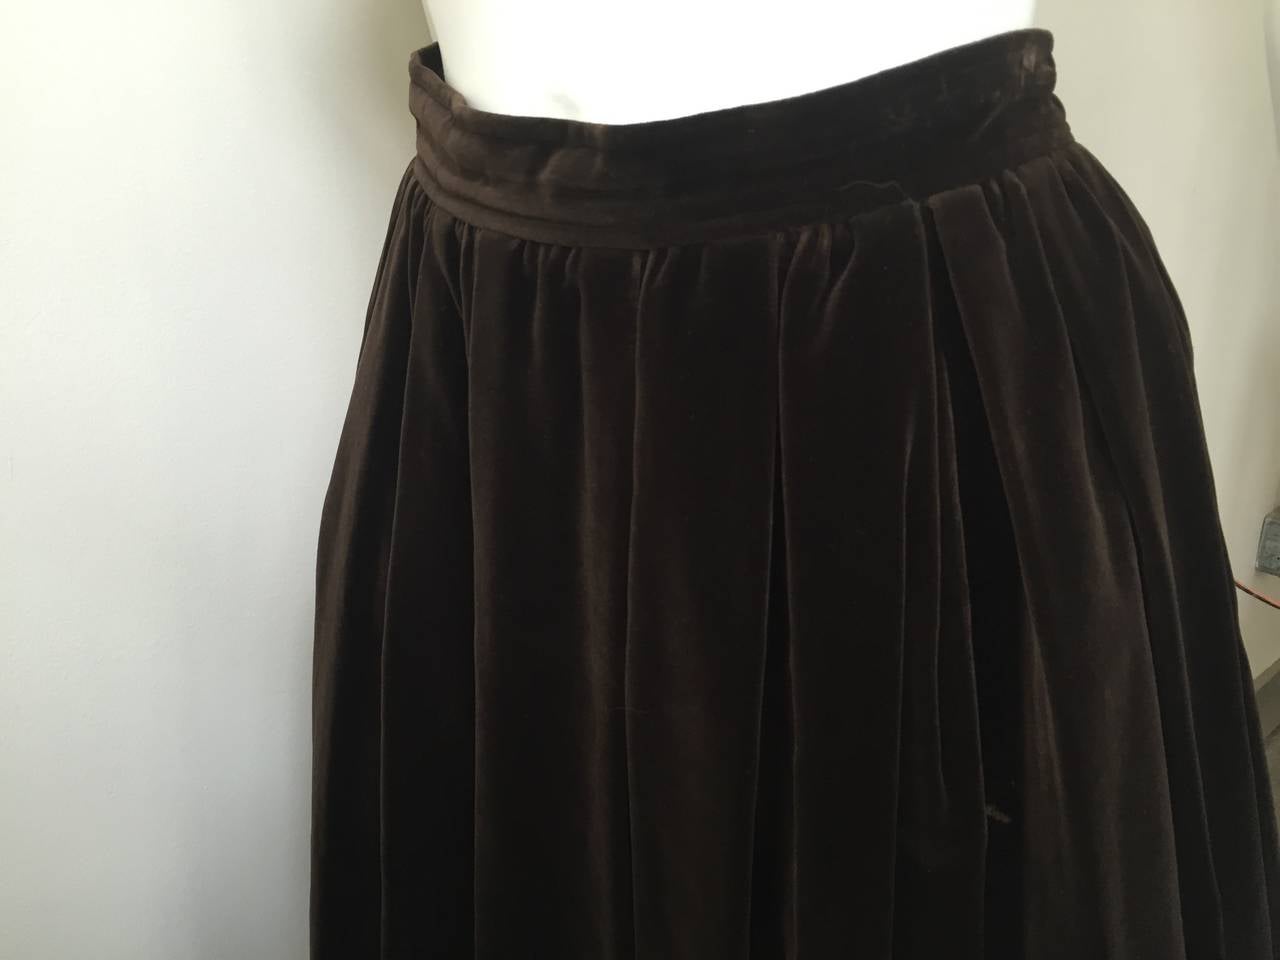 Saint Laurent Rive Gauche 70s velvet skirt with pockets size 6. 3